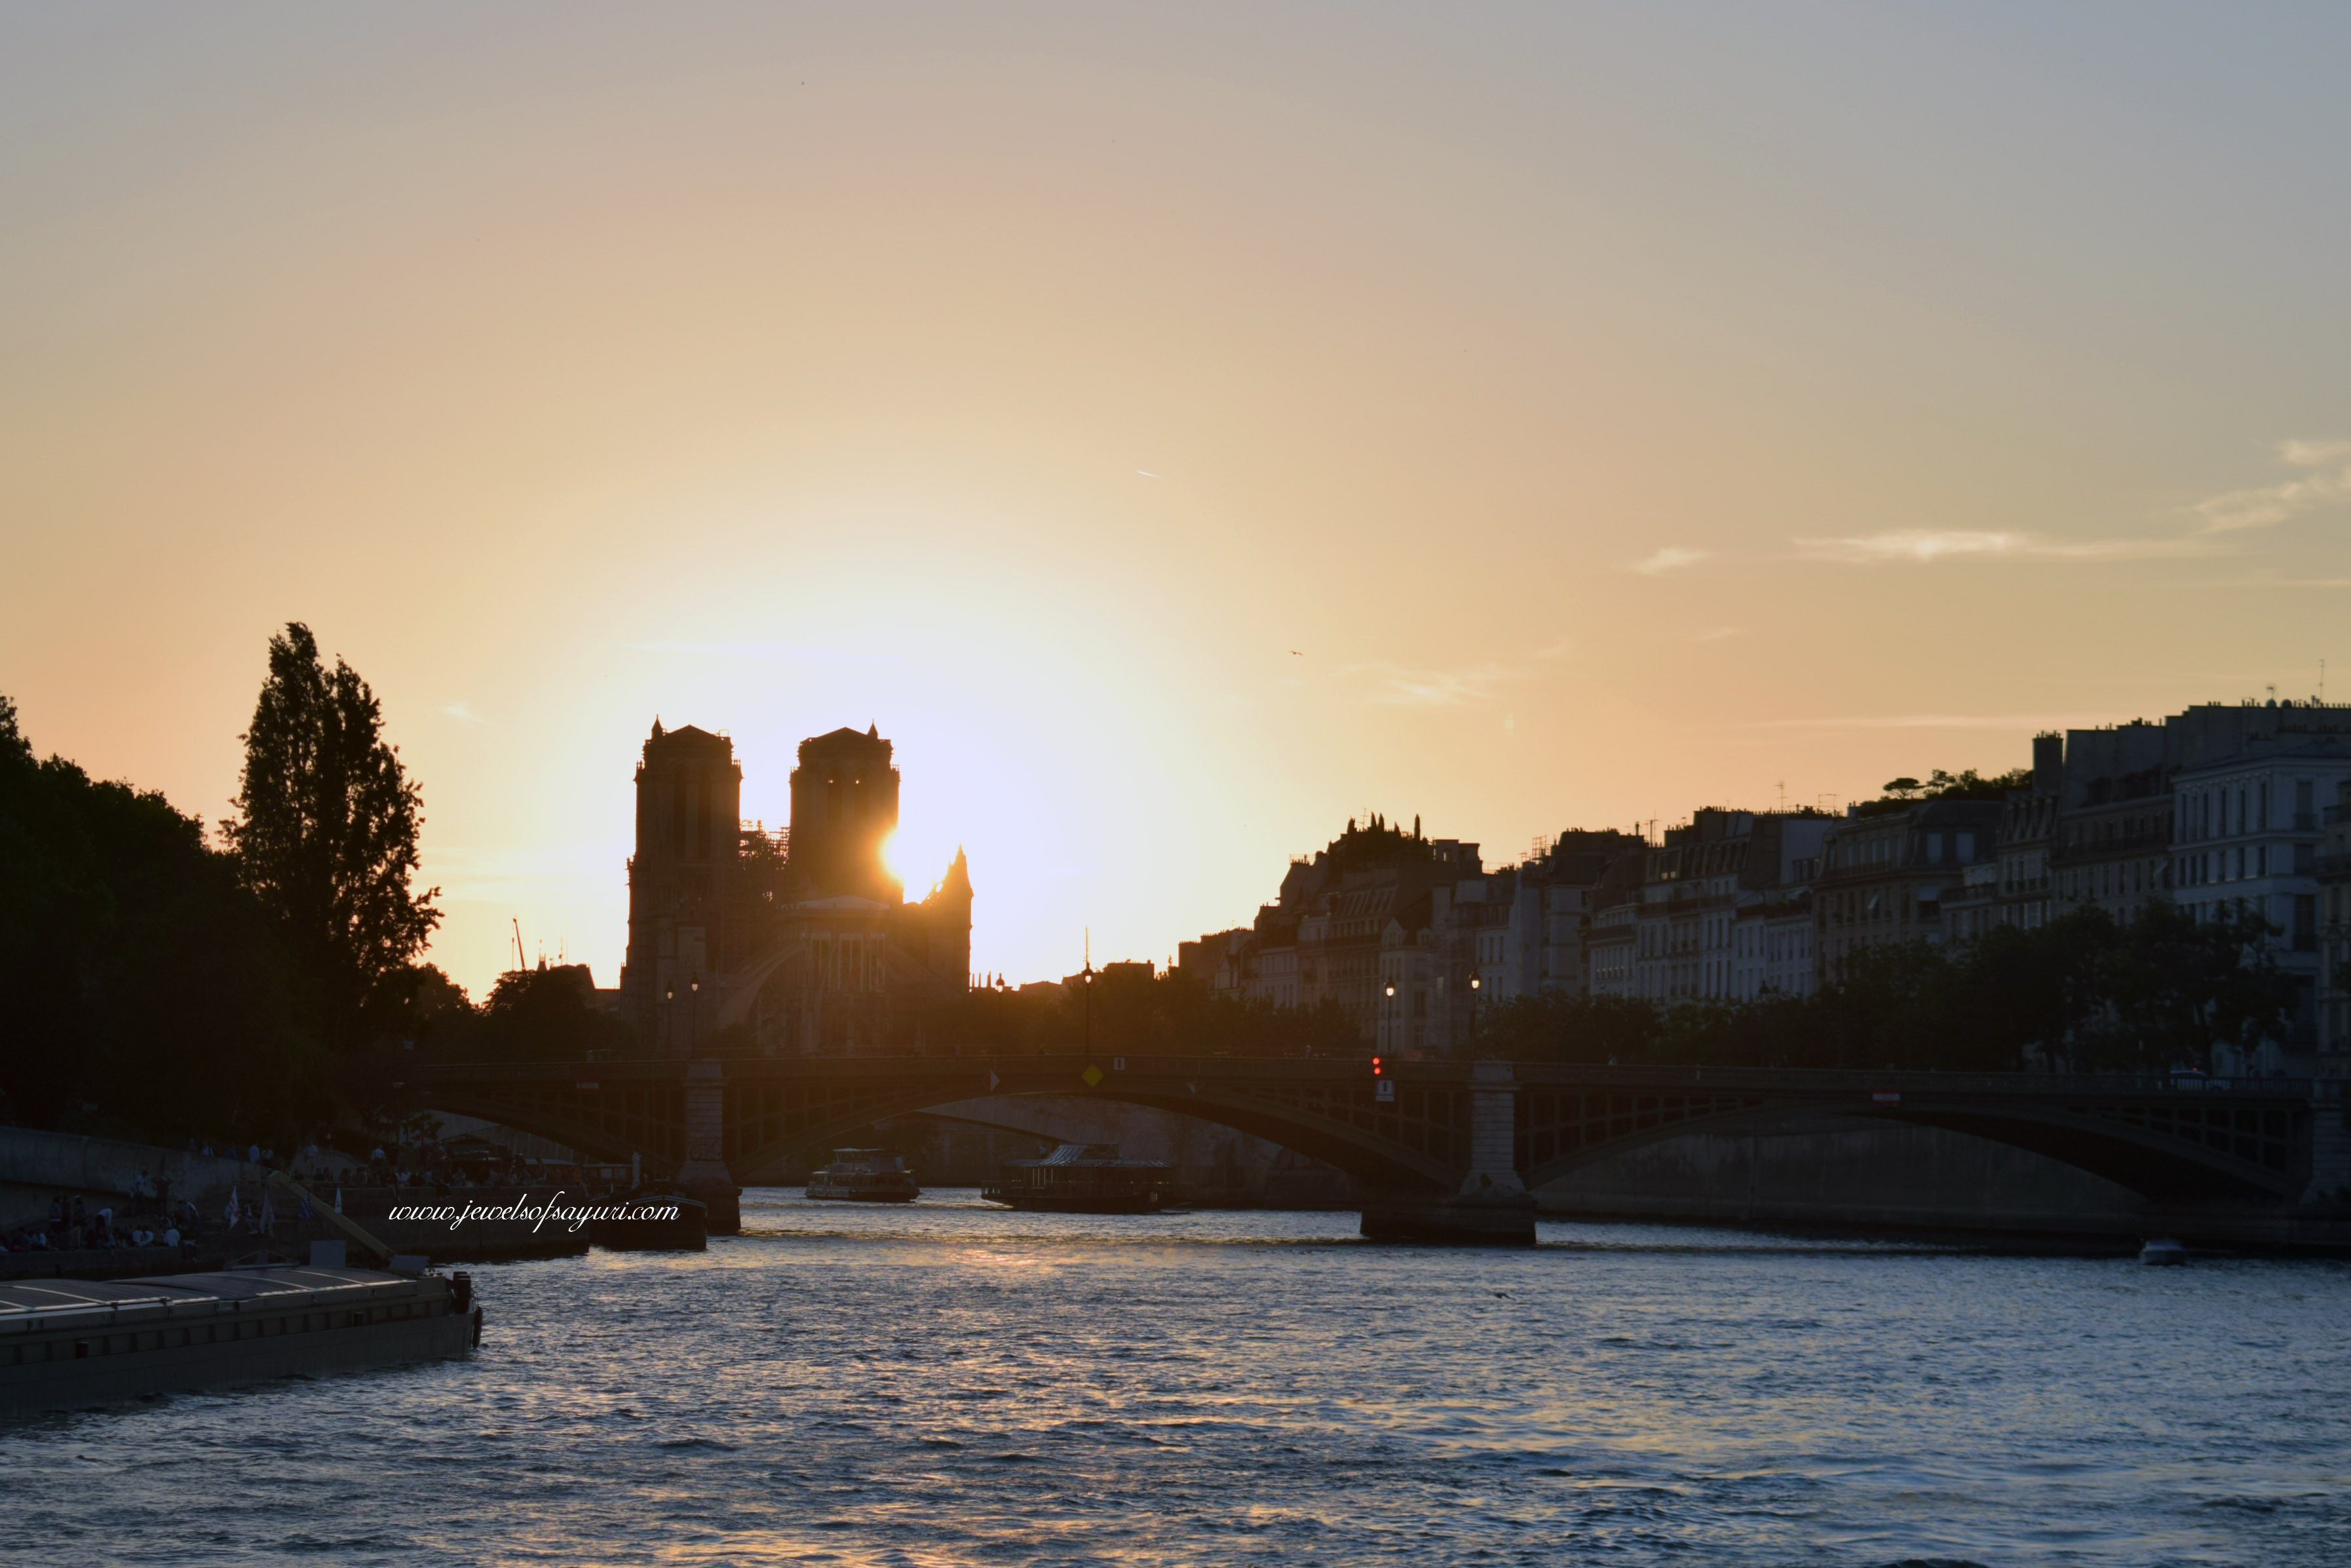  Paris in three days - Seine river cruise